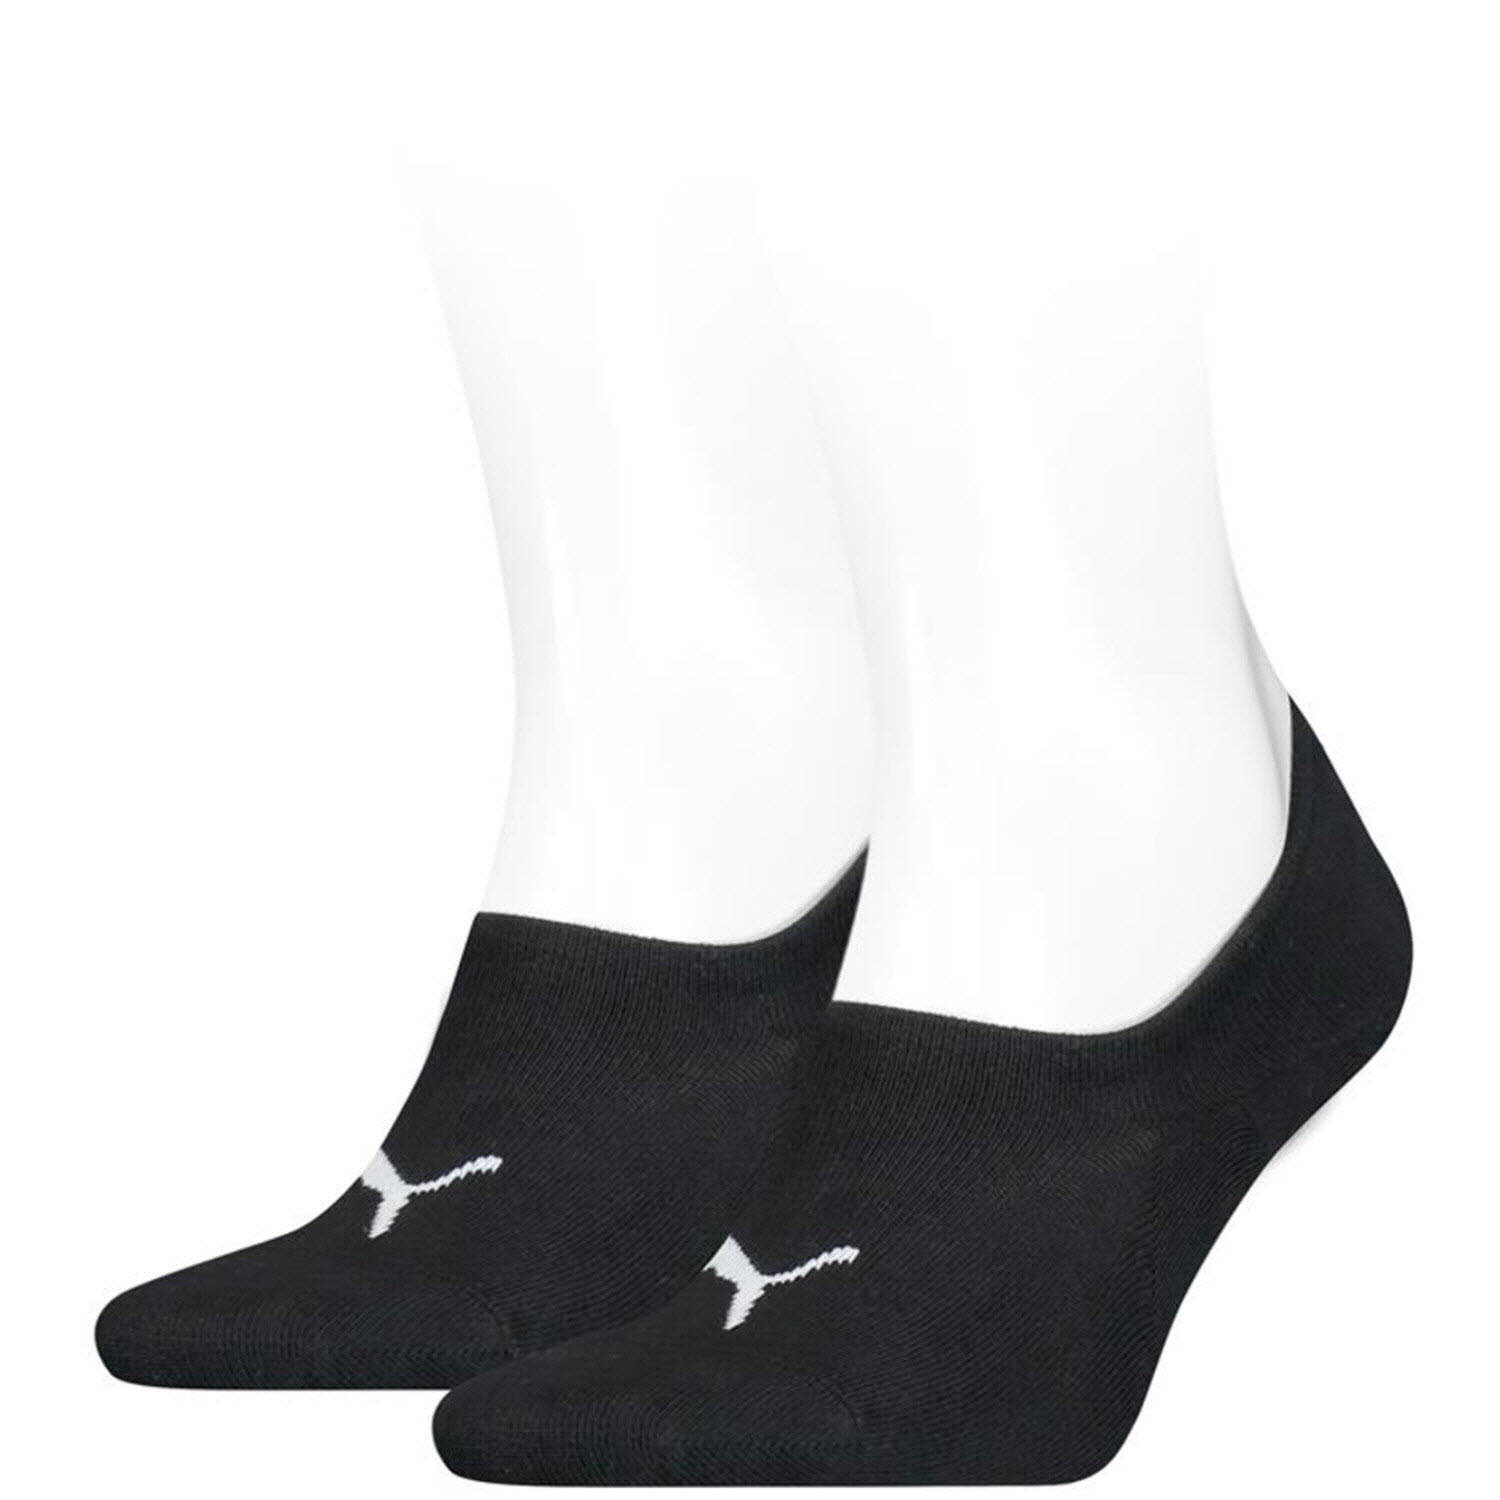 Damen Socken von Puma auch in Schwarz erhältlich